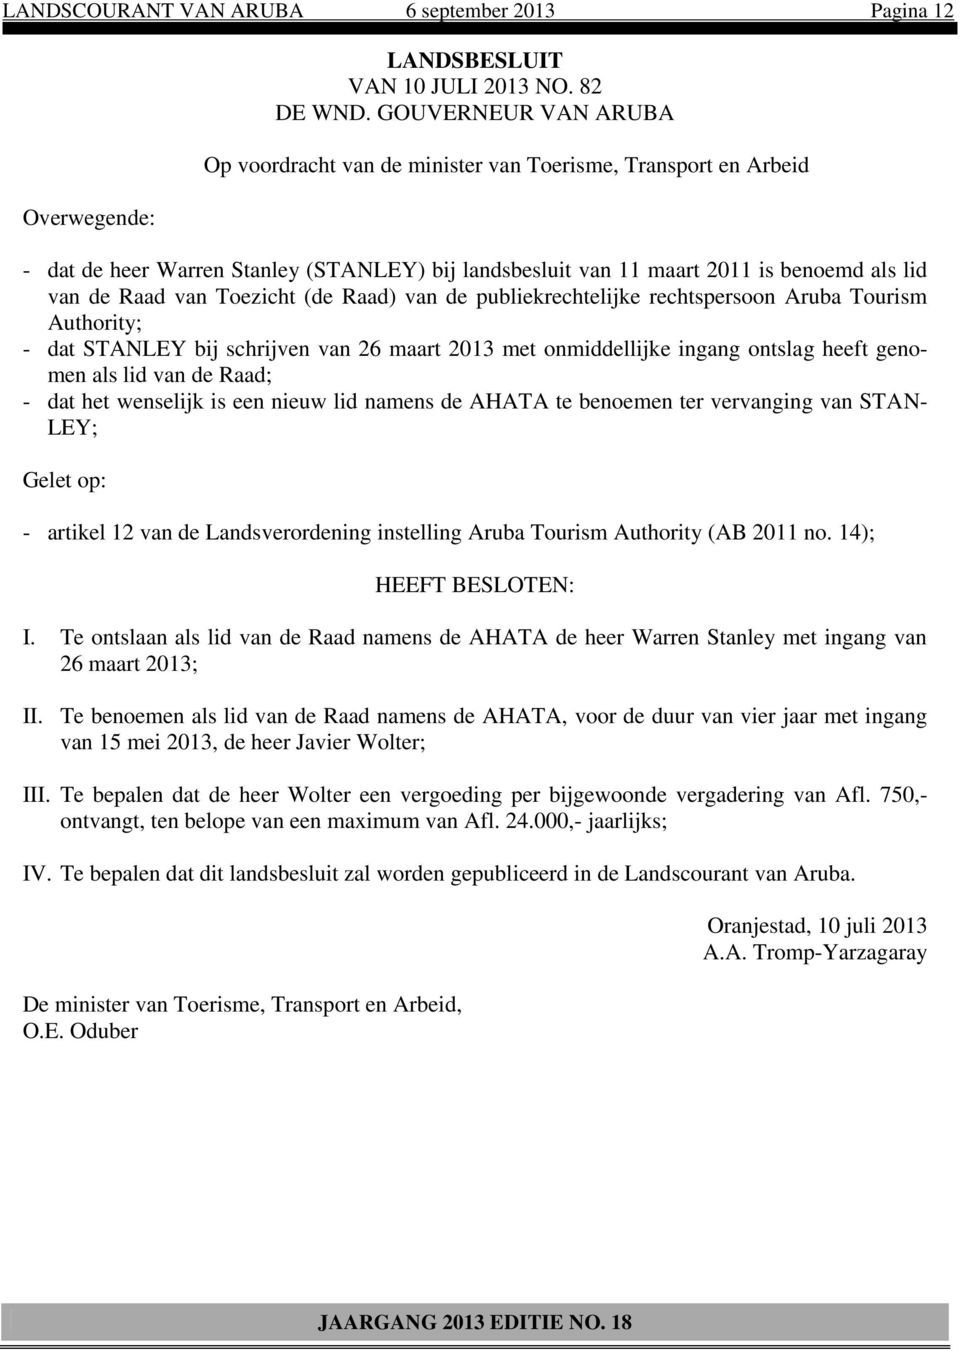 Raad van Toezicht (de Raad) van de publiekrechtelijke rechtspersoon Aruba Tourism Authority; - dat STANLEY bij schrijven van 26 maart 2013 met onmiddellijke ingang ontslag heeft genomen als lid van